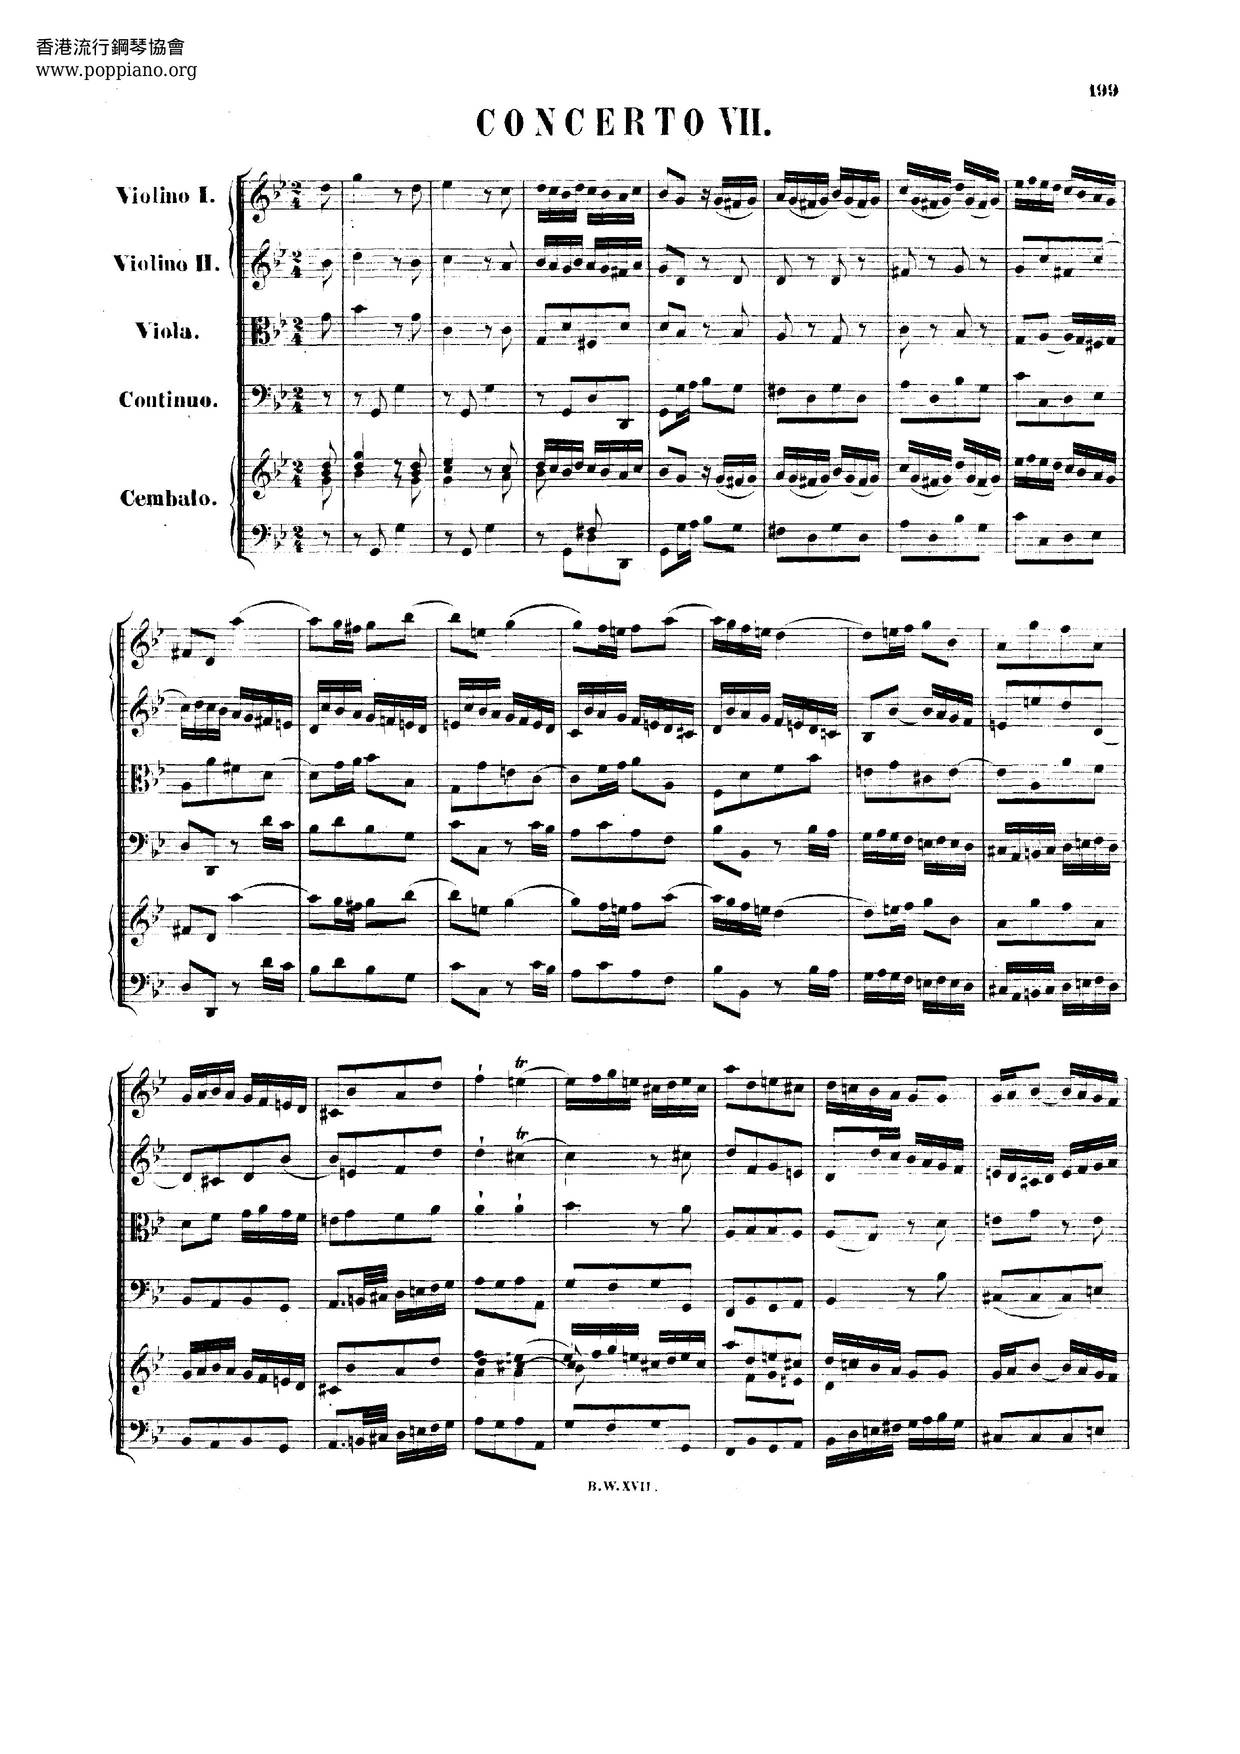 Harpsichord Concerto No. 7 In G Minor, BWV 1058 Score